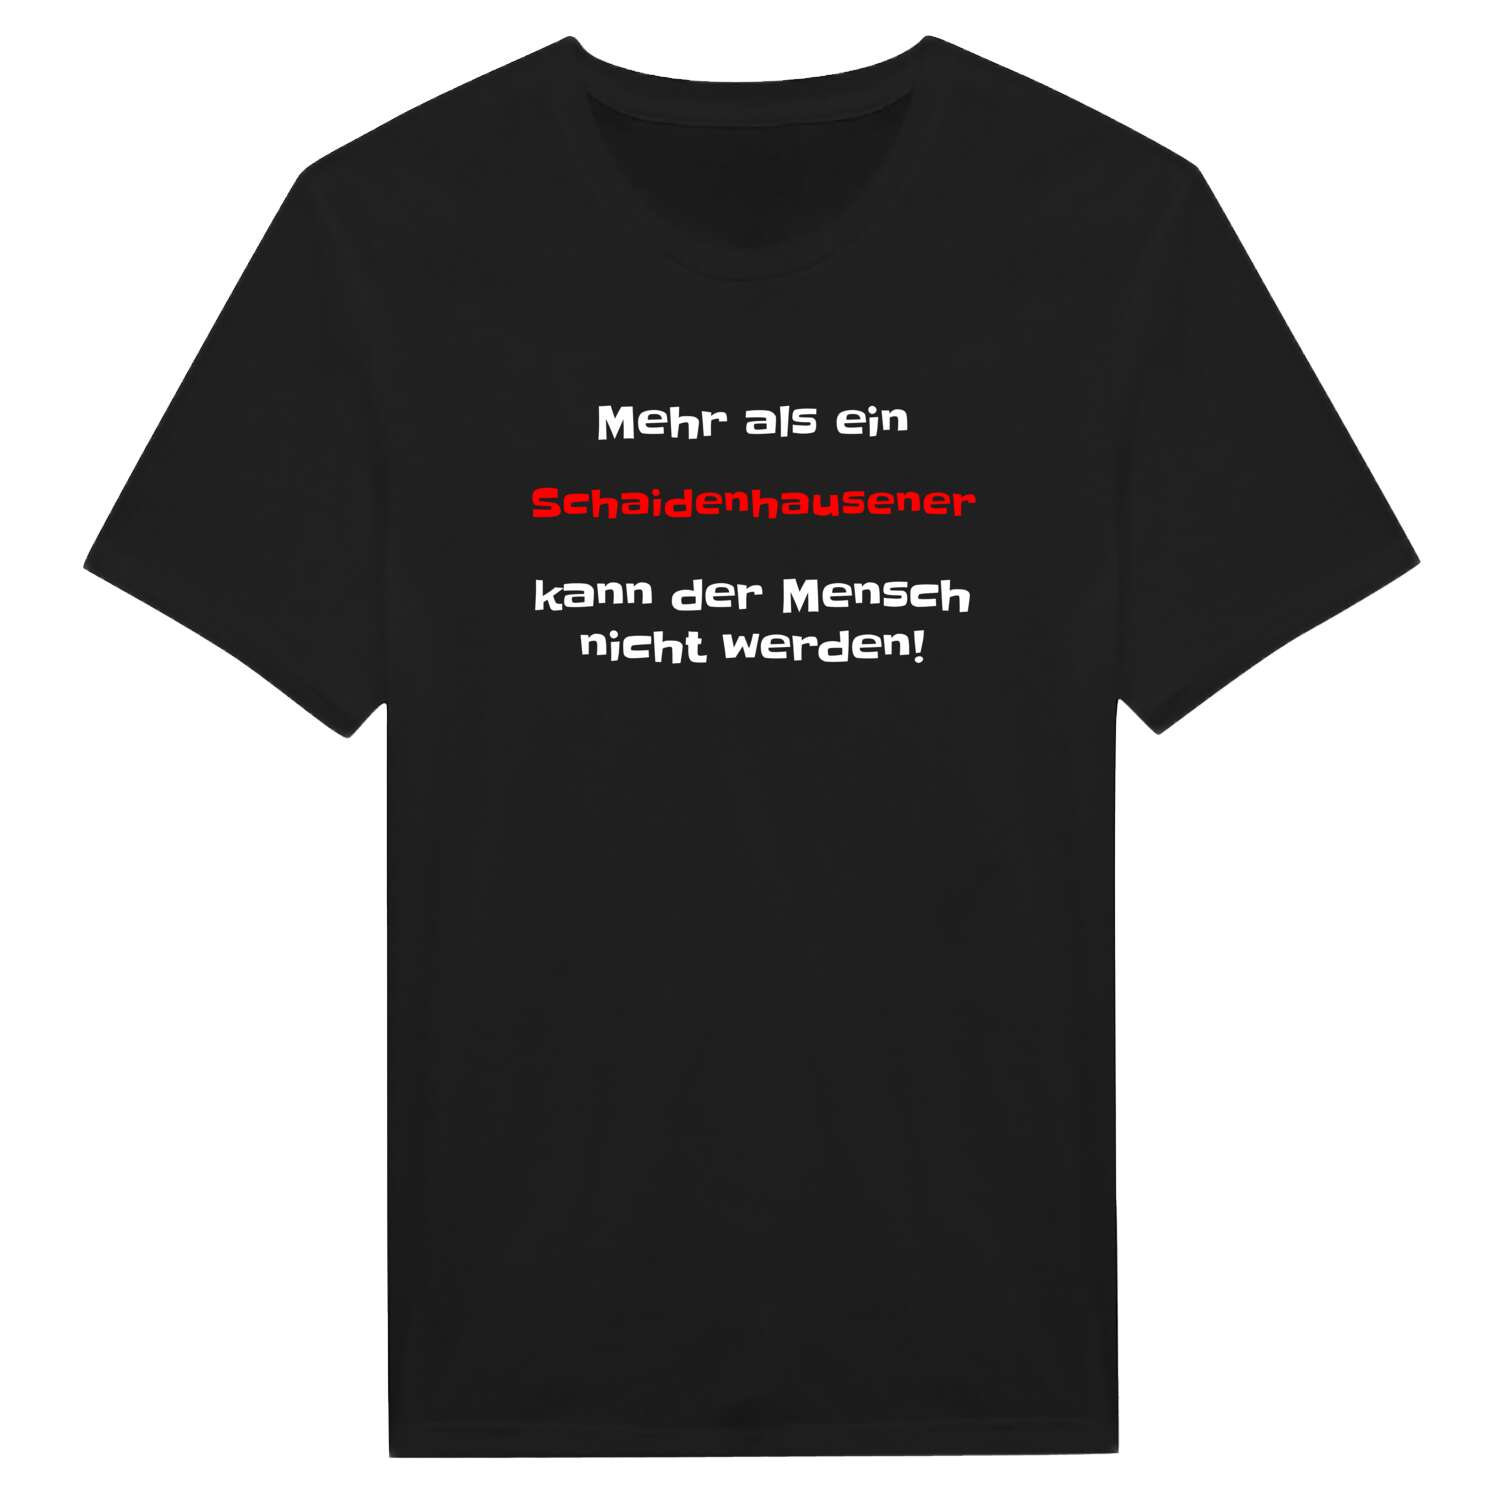 Schaidenhausen T-Shirt »Mehr als ein«